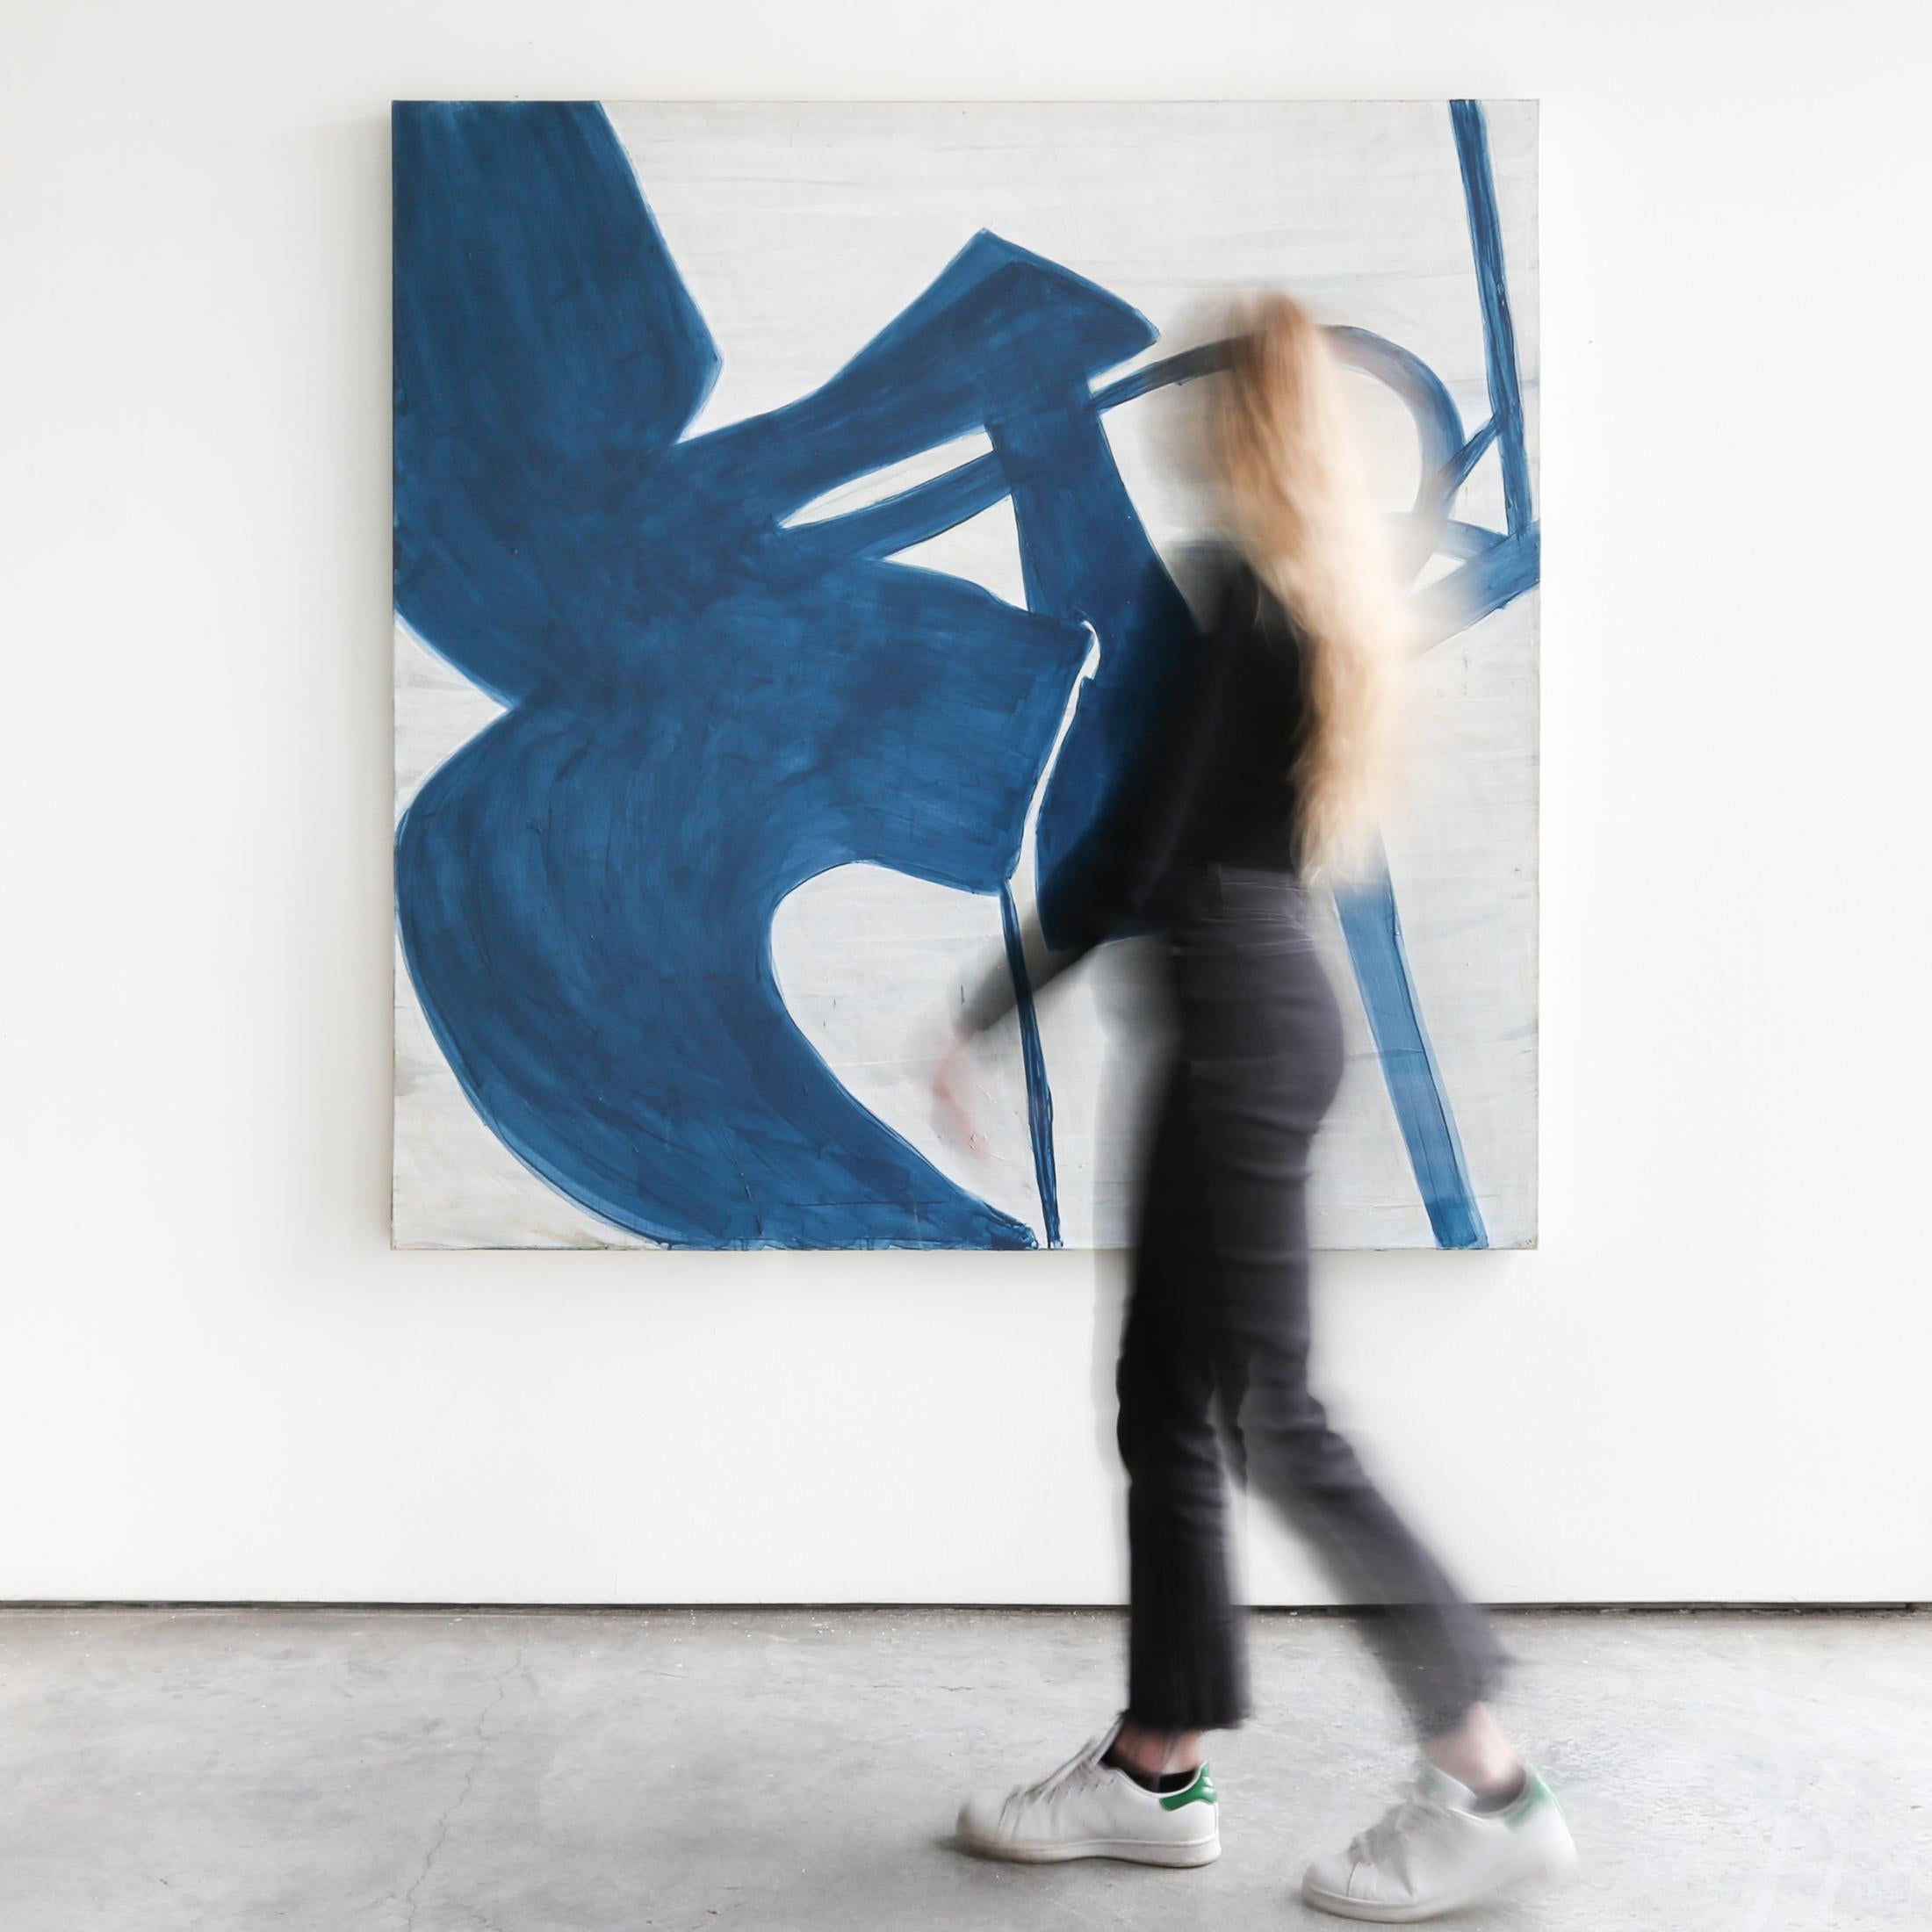 INDIGO COLLAGE I der Künstlerin Kim Fonder ist ein graues, indigoblaues und weißes, zeitgenössisches, abstraktes Gemälde in Mischtechnik auf Leinwand mit den Maßen 60 x 60 und einem Preis von 6.200 $.

Kim Fonder liebt Textur und Berührung. Ihre